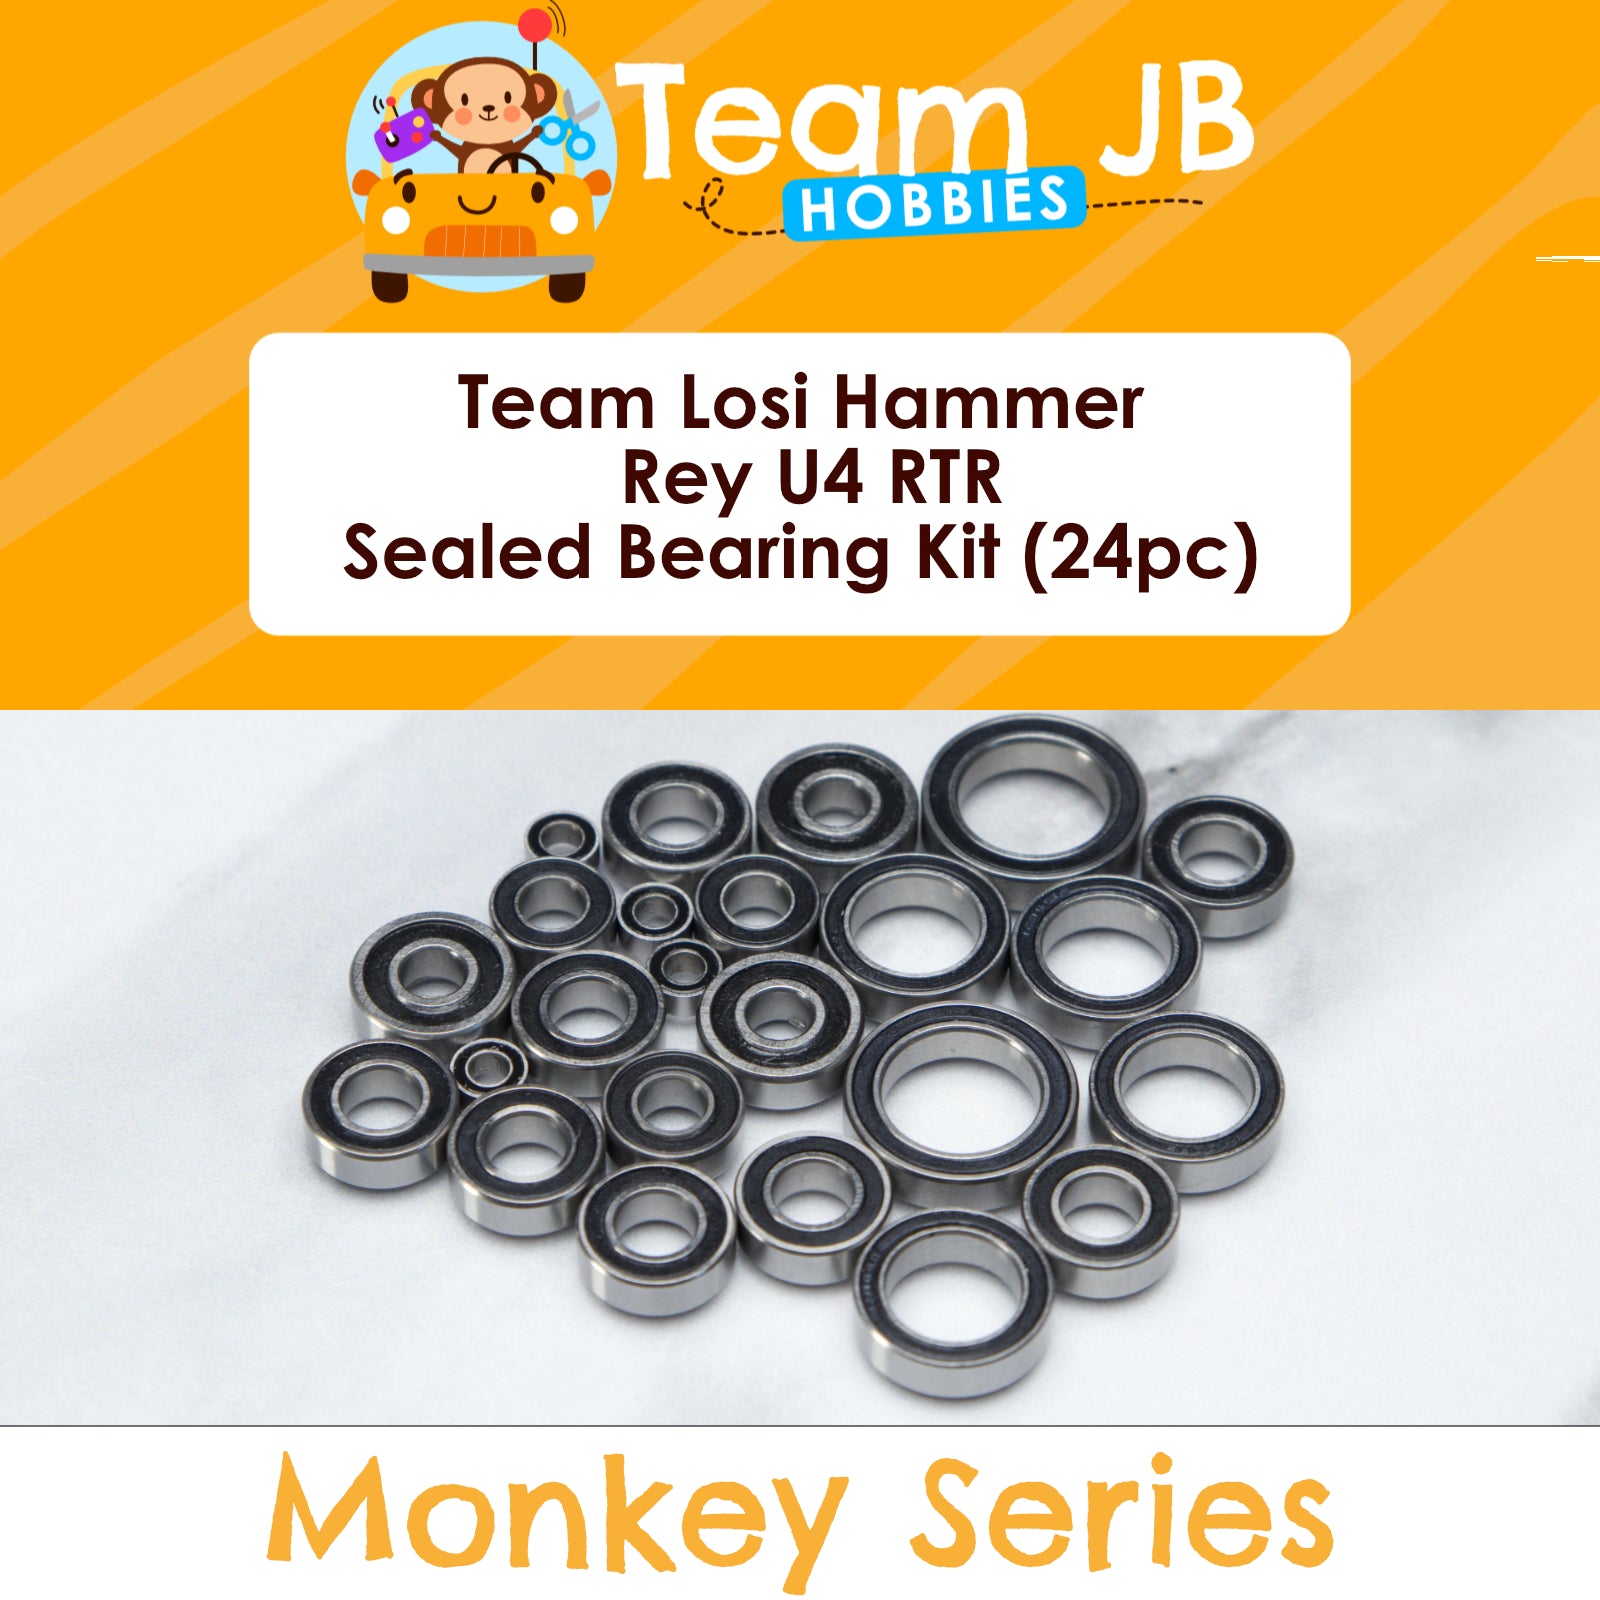 Team Losi Hammer Rey U4 RTR - Sealed Bearing Kit